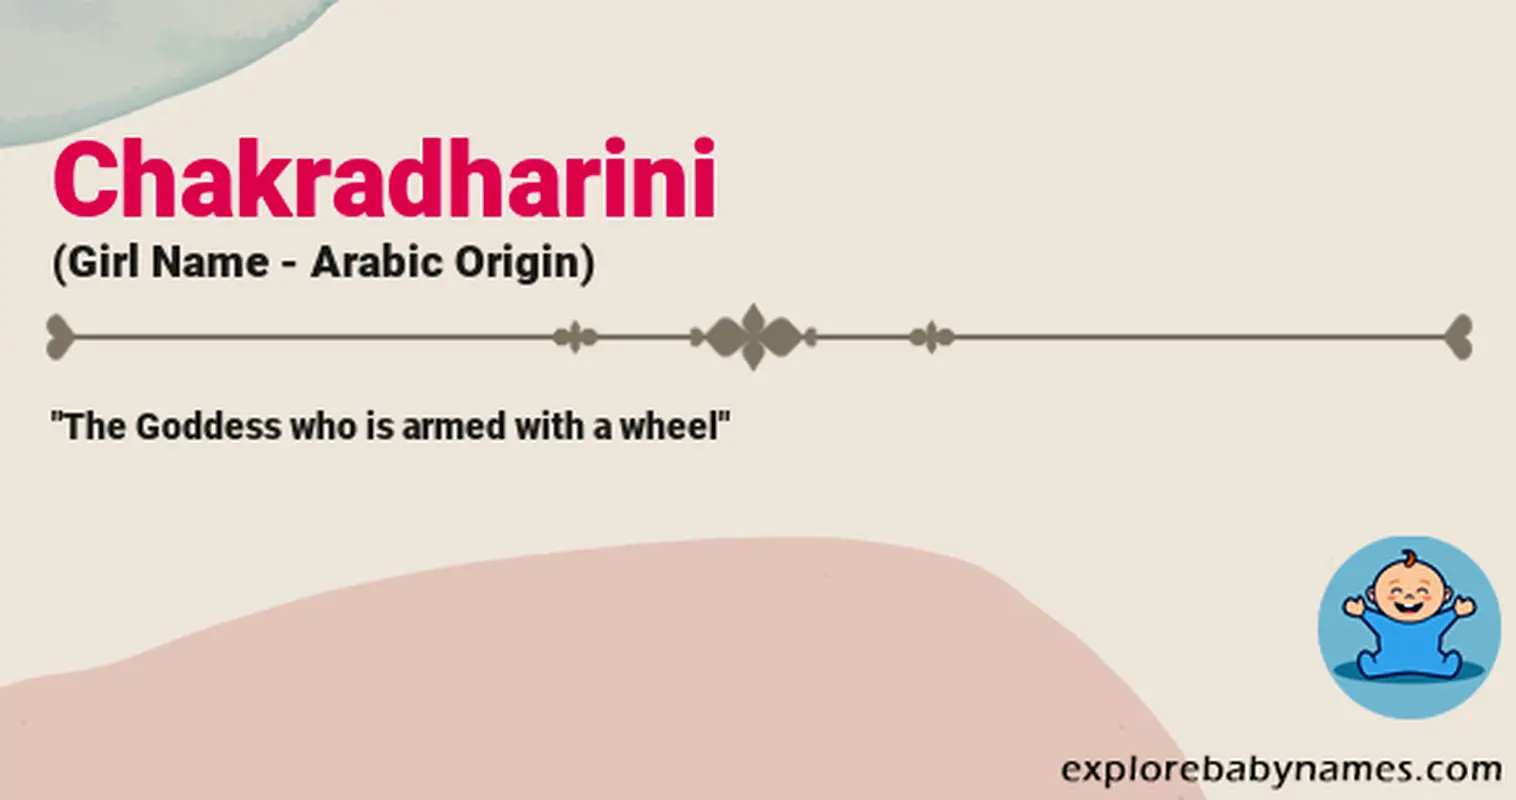 Meaning of Chakradharini